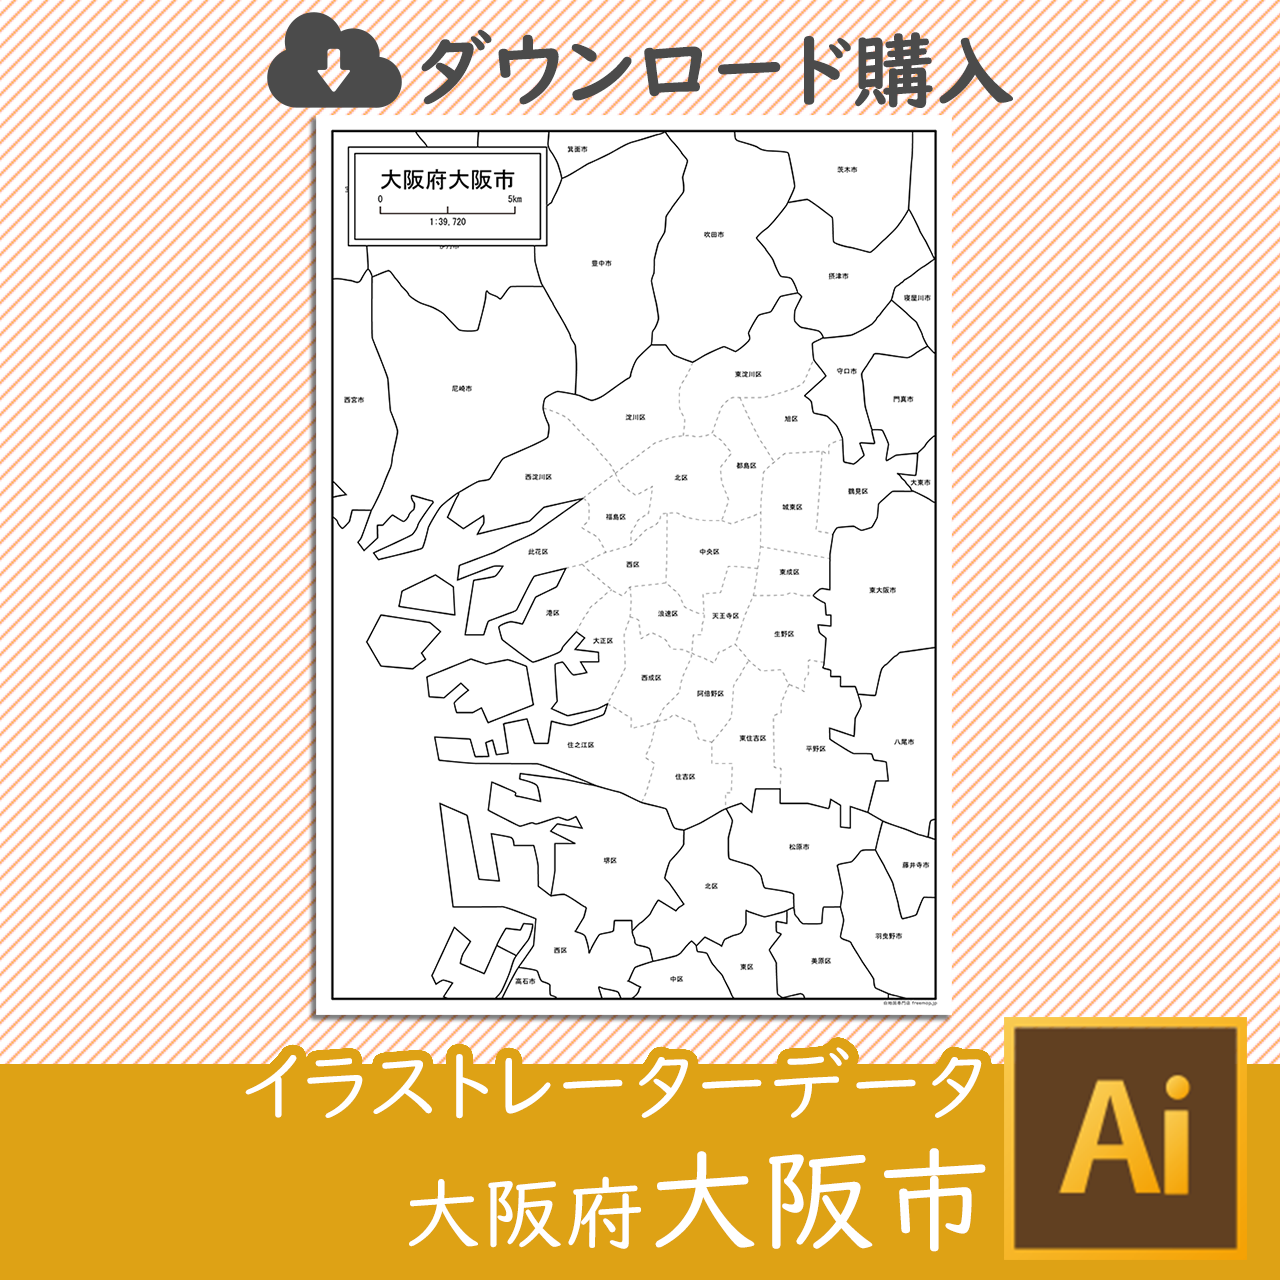 大阪府大阪市のaiデータのサムネイル画像